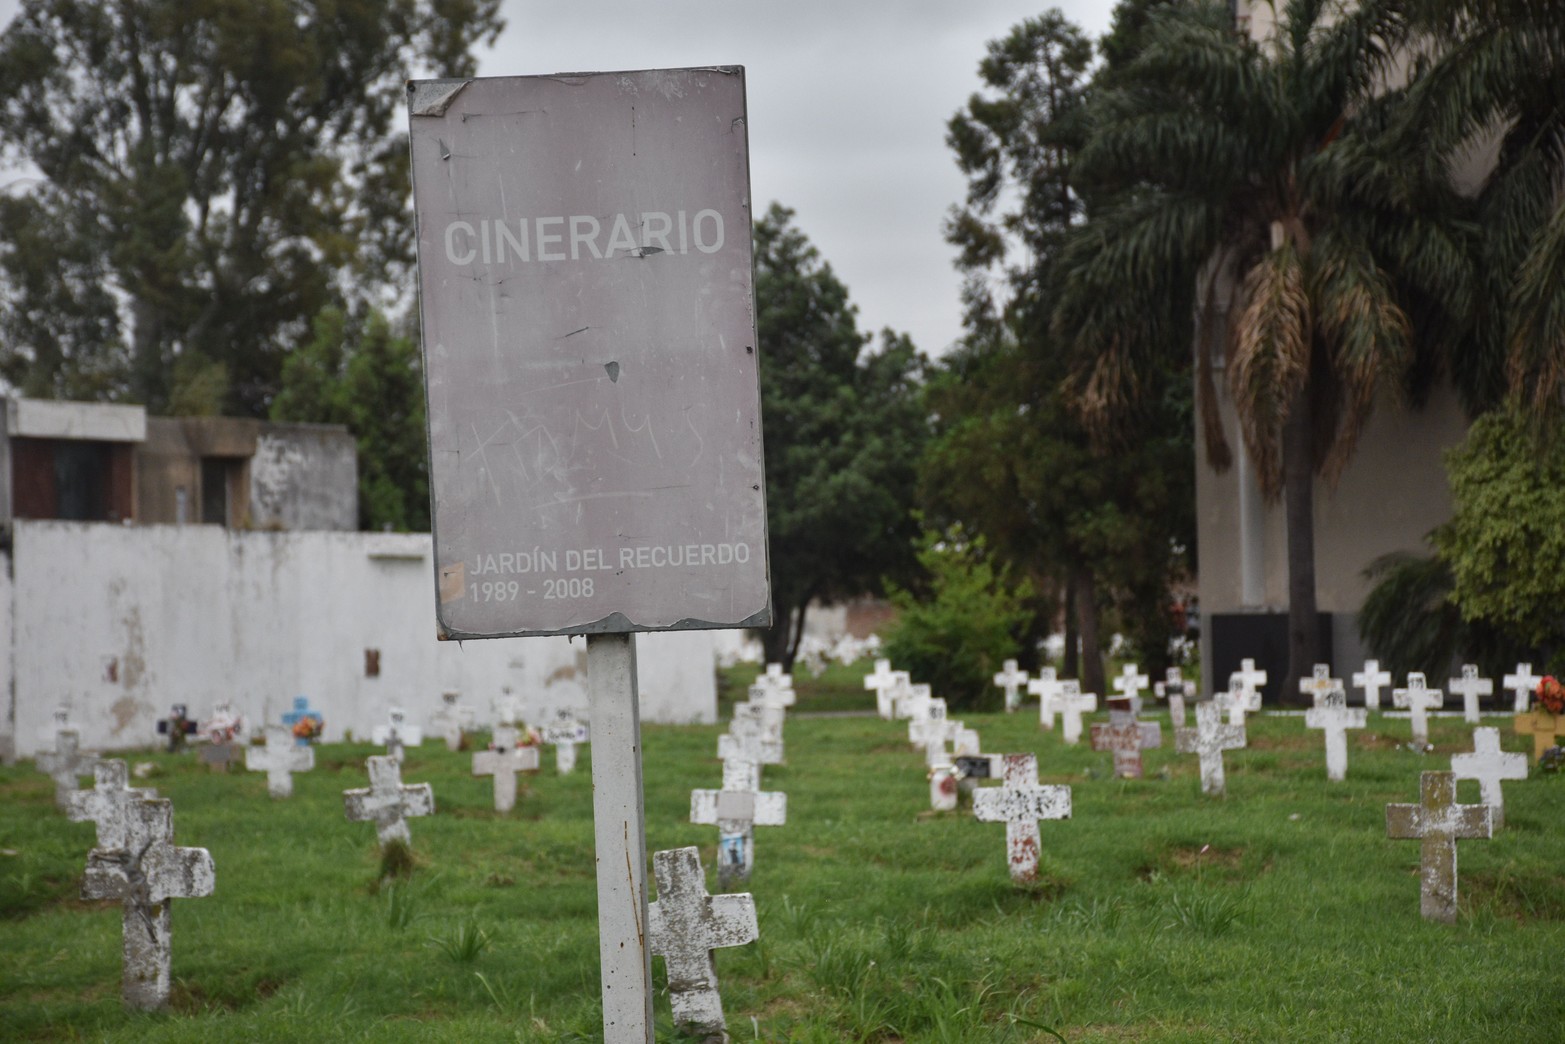 En el cementerio municipal de la capital provincial hay nueve cinerarios. Siete ya están repletos, por lo que solamente se pueden depositar las cenizas en dos